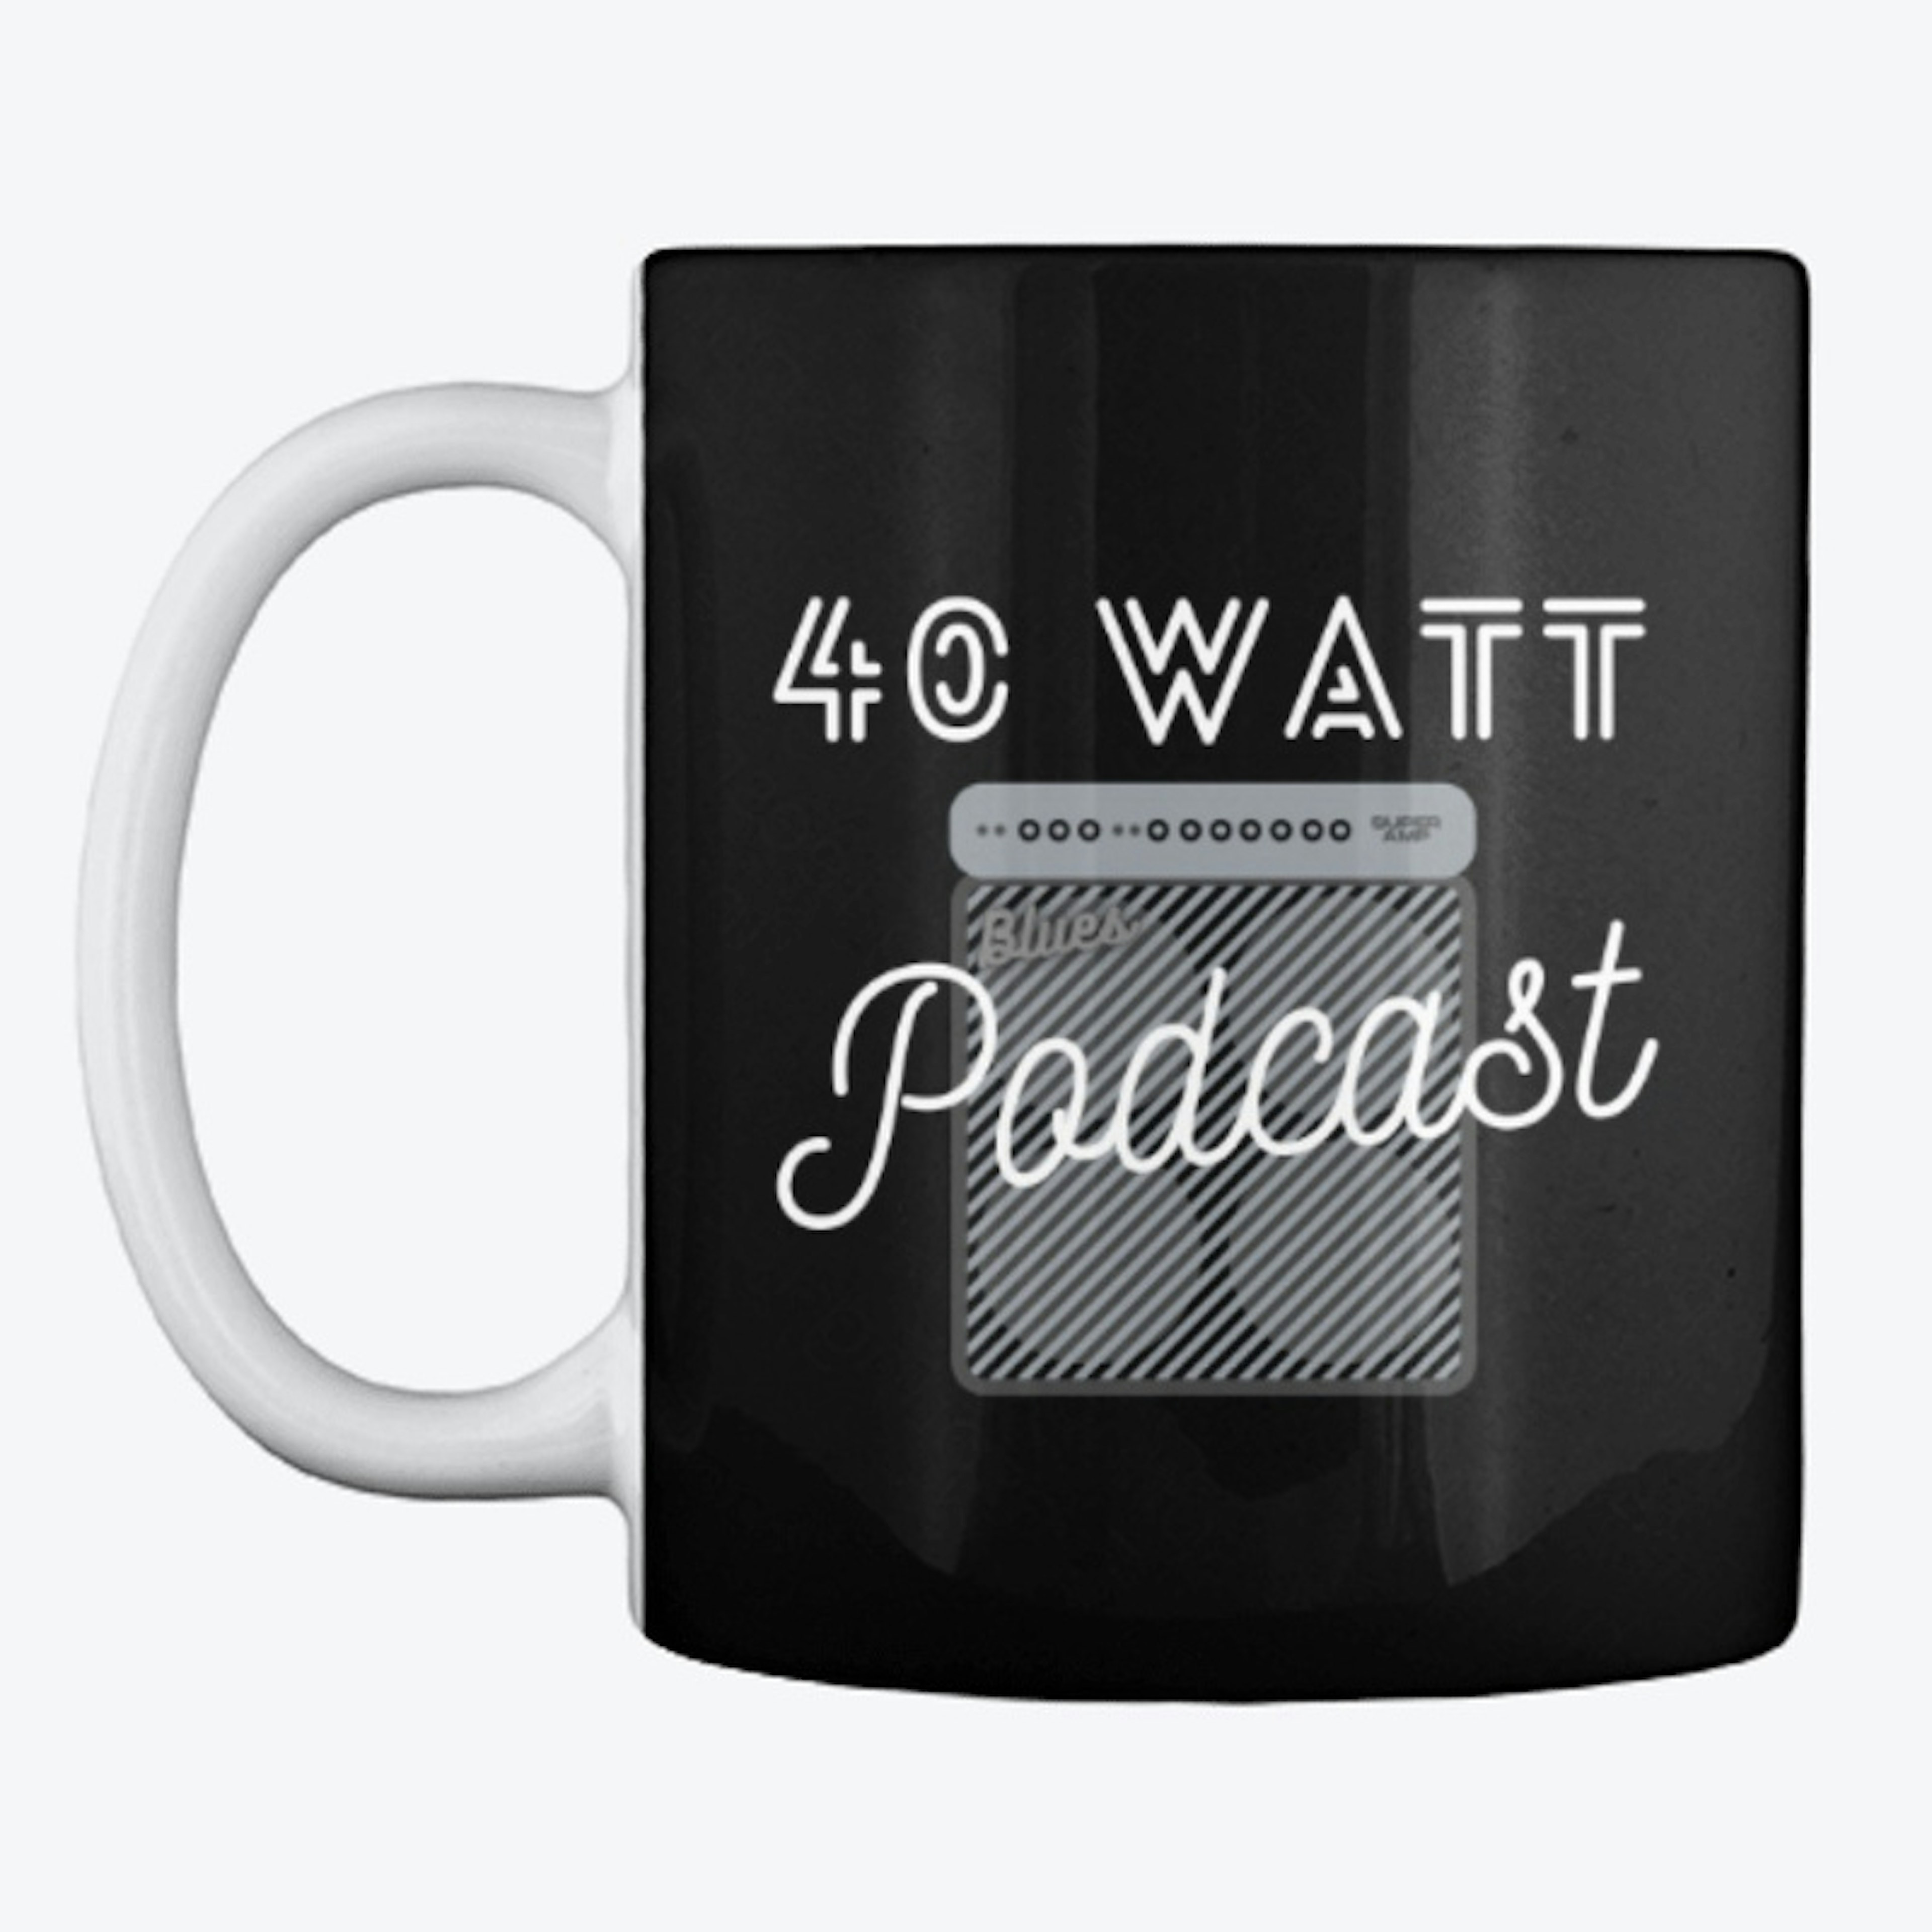 40 Watt Coffee Mug (black)